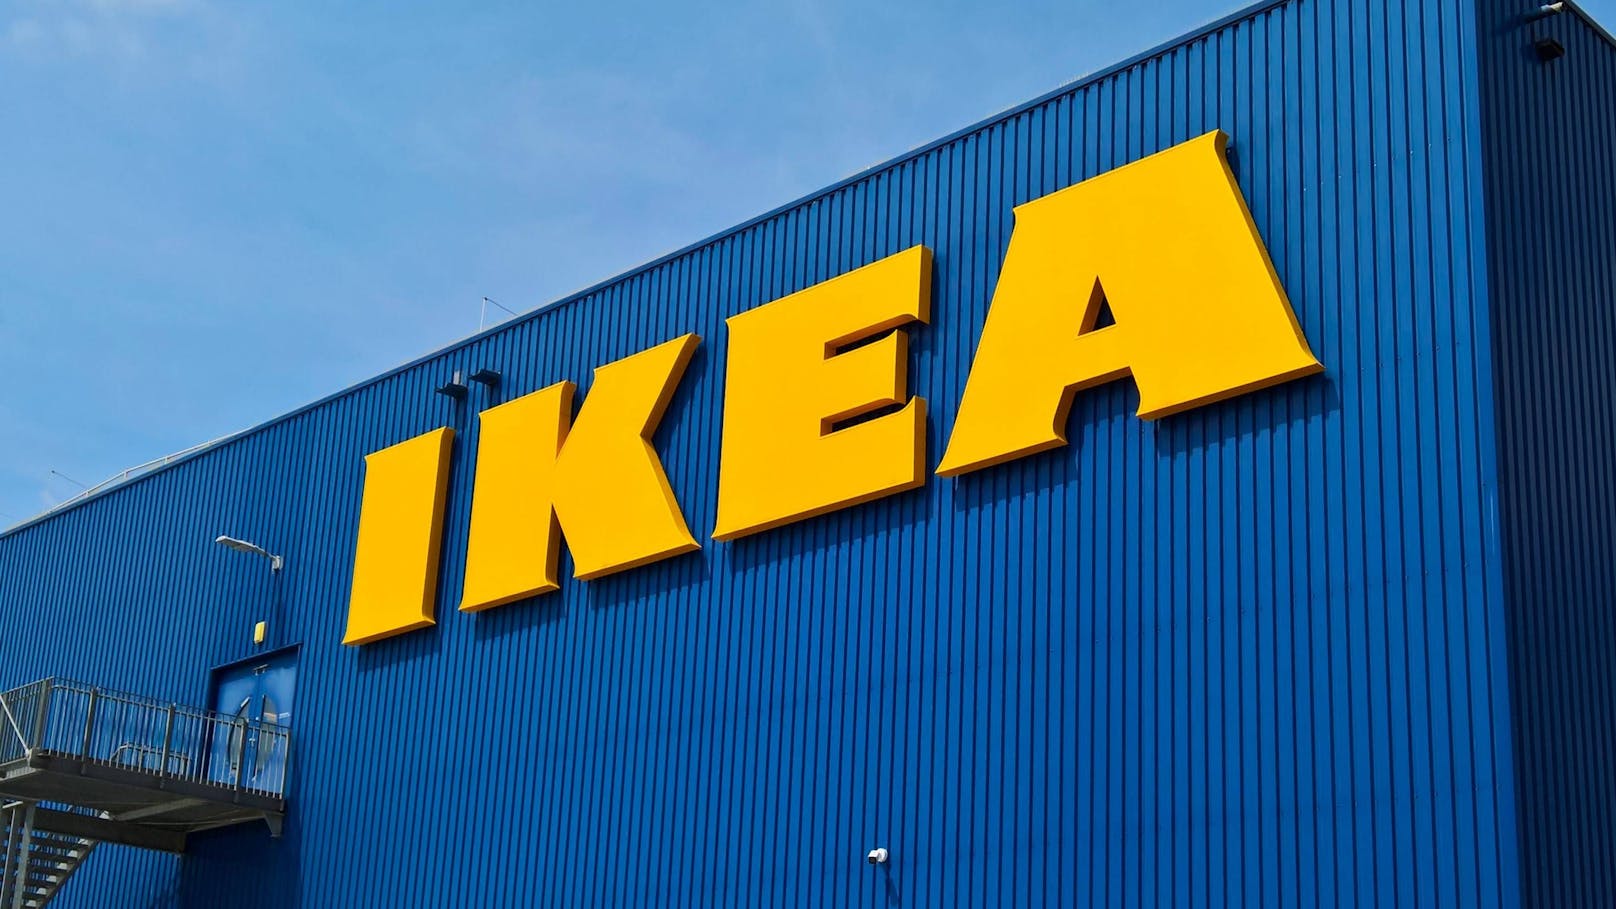 Olympia-Matratzen zu hart, Schwedinnen fahren zu IKEA